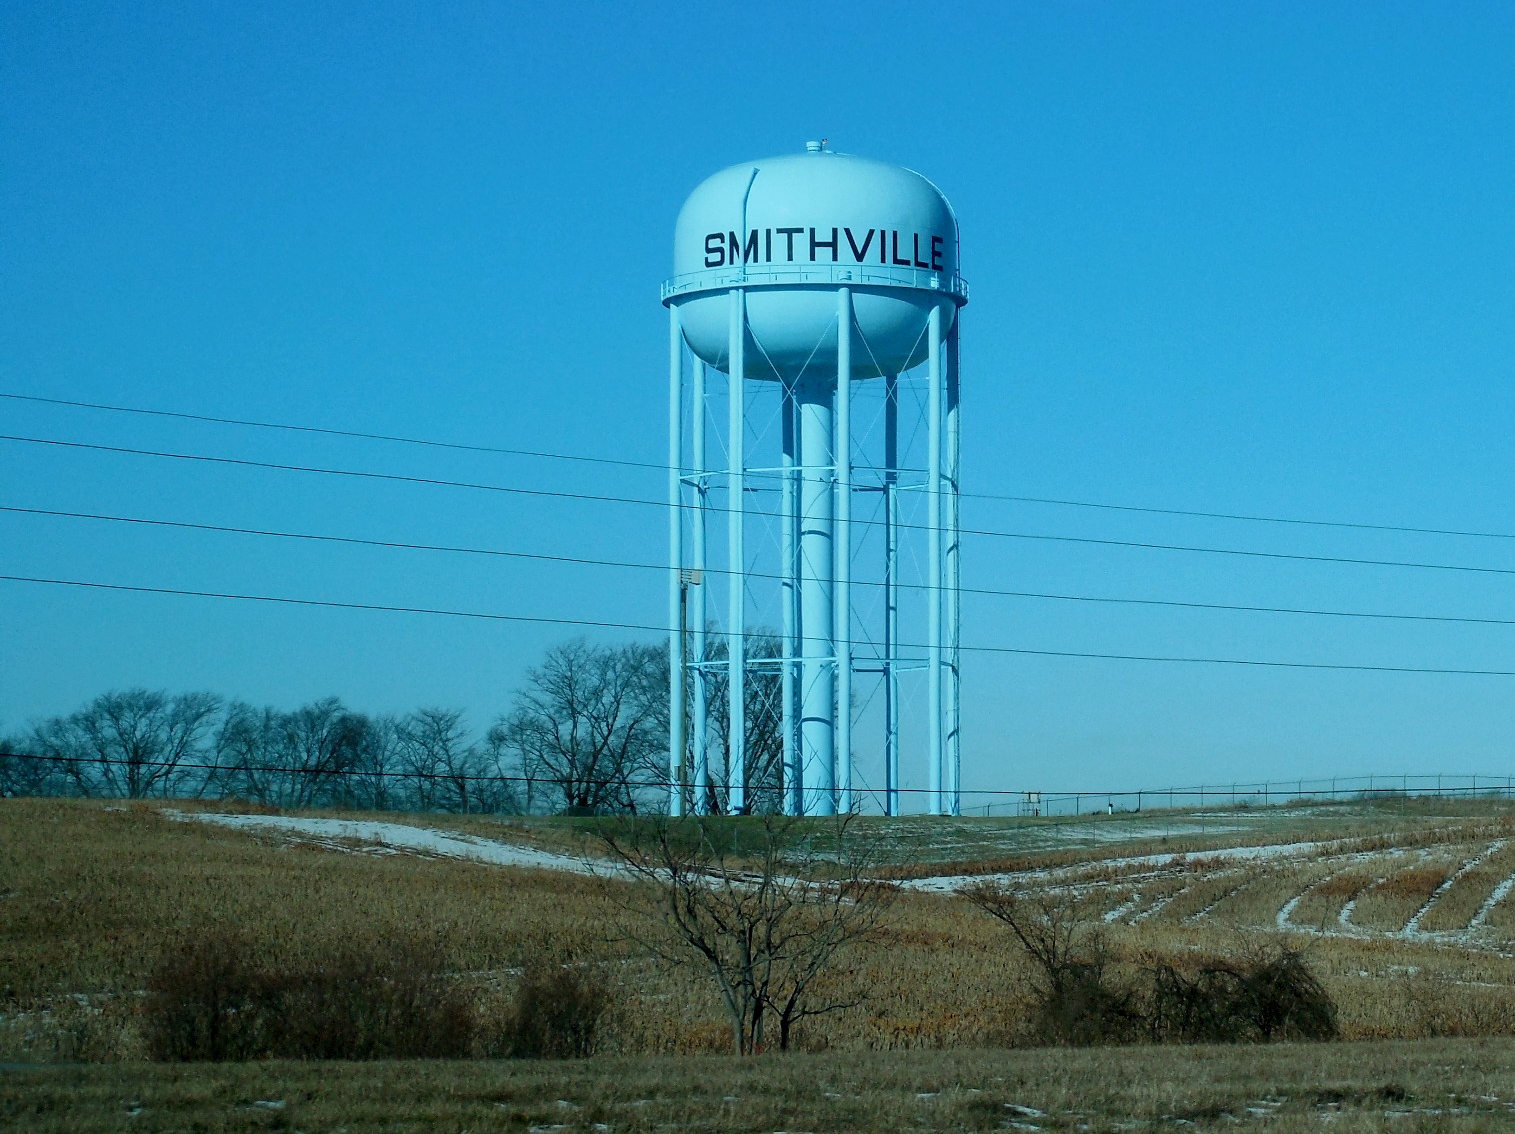 A Short Trip to Smithville, MO